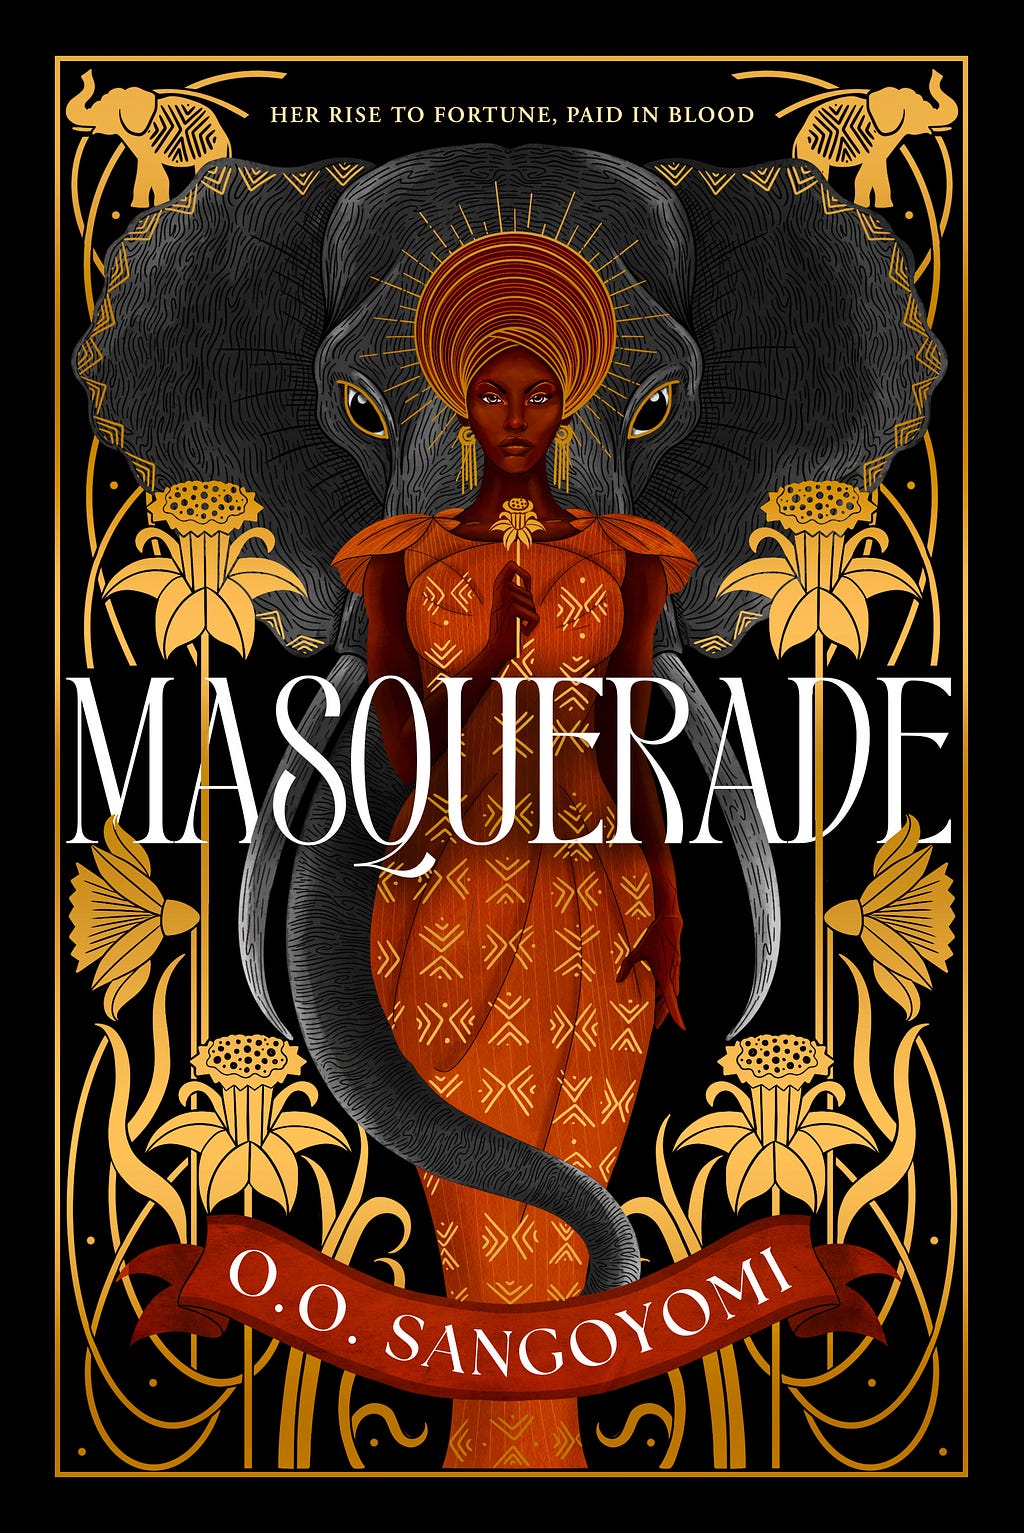 PDF Masquerade By O.O. Sangoyomi